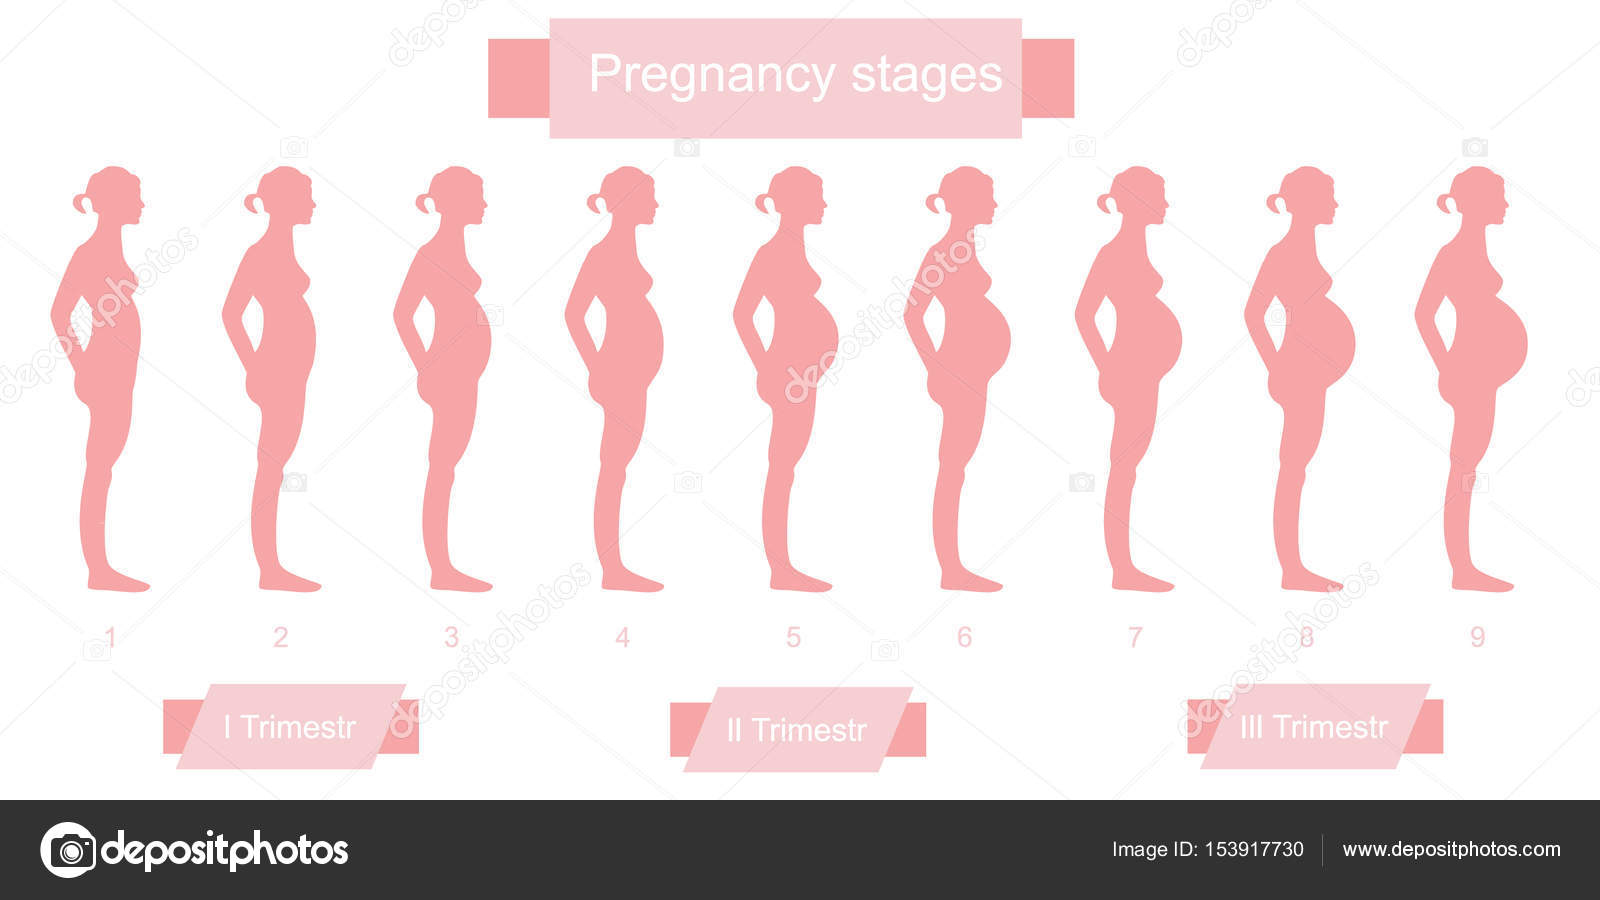 Как изменяется тело во время триместров беременности: Путешествие в мир будущих мам